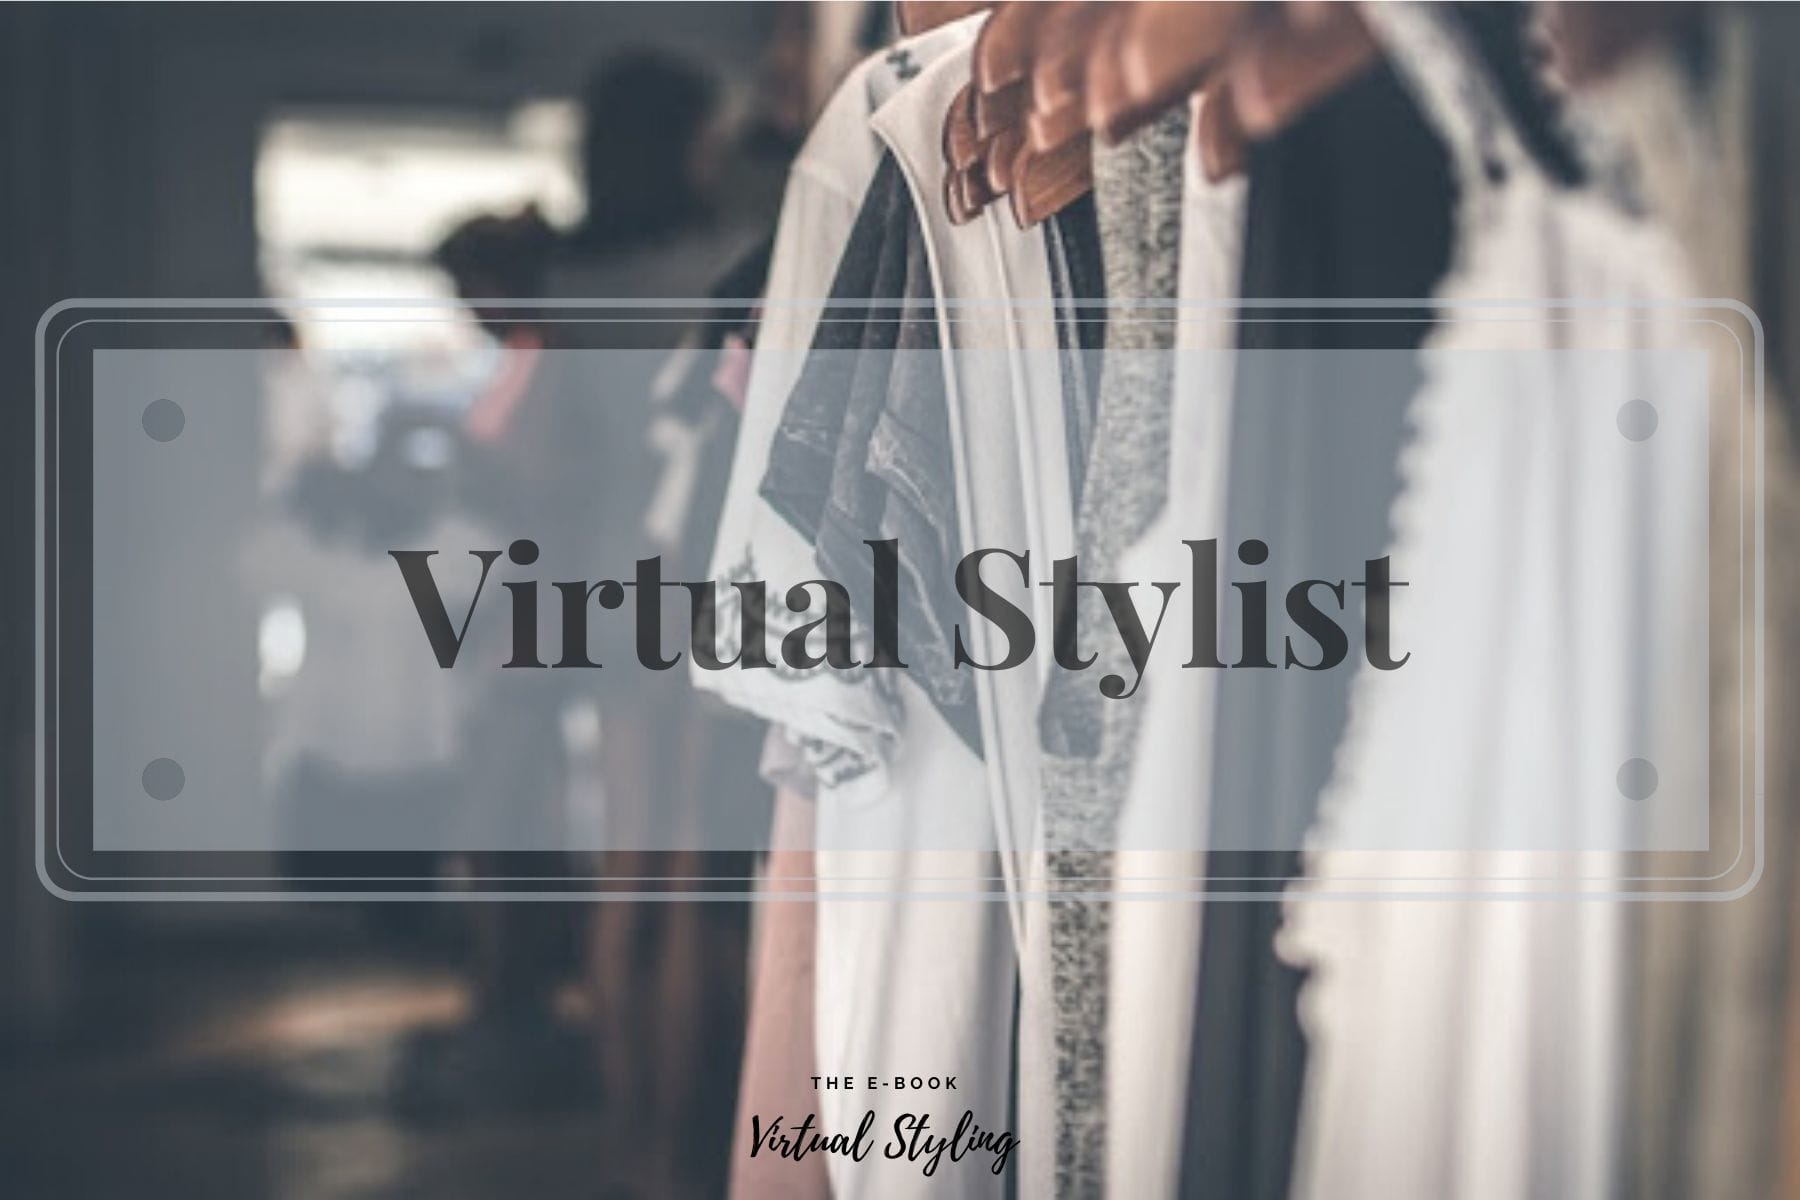 virtual fashion styling